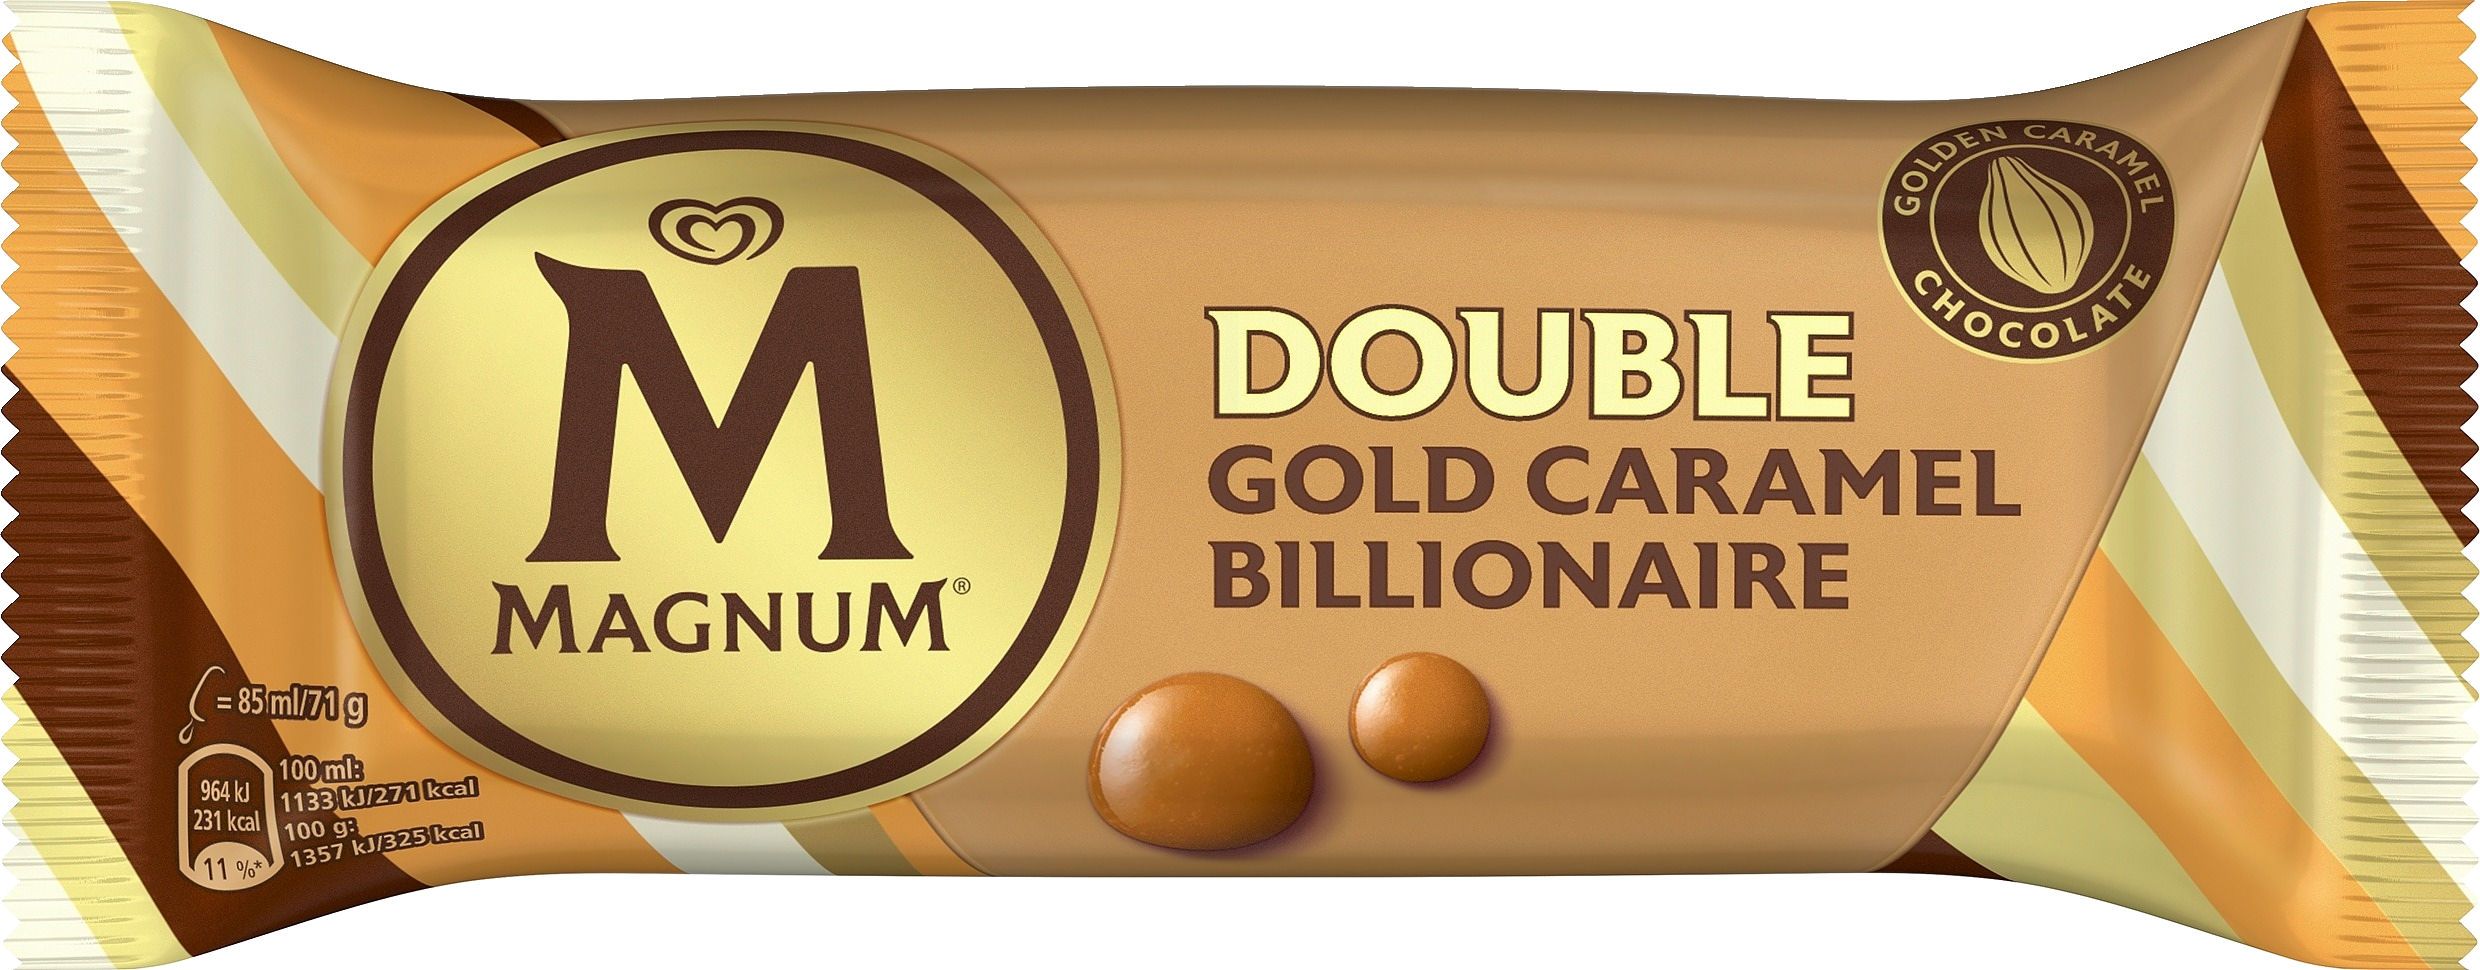 Magnum Jäätelöpuikko Double Gold Caramel Billionaire 85 ML